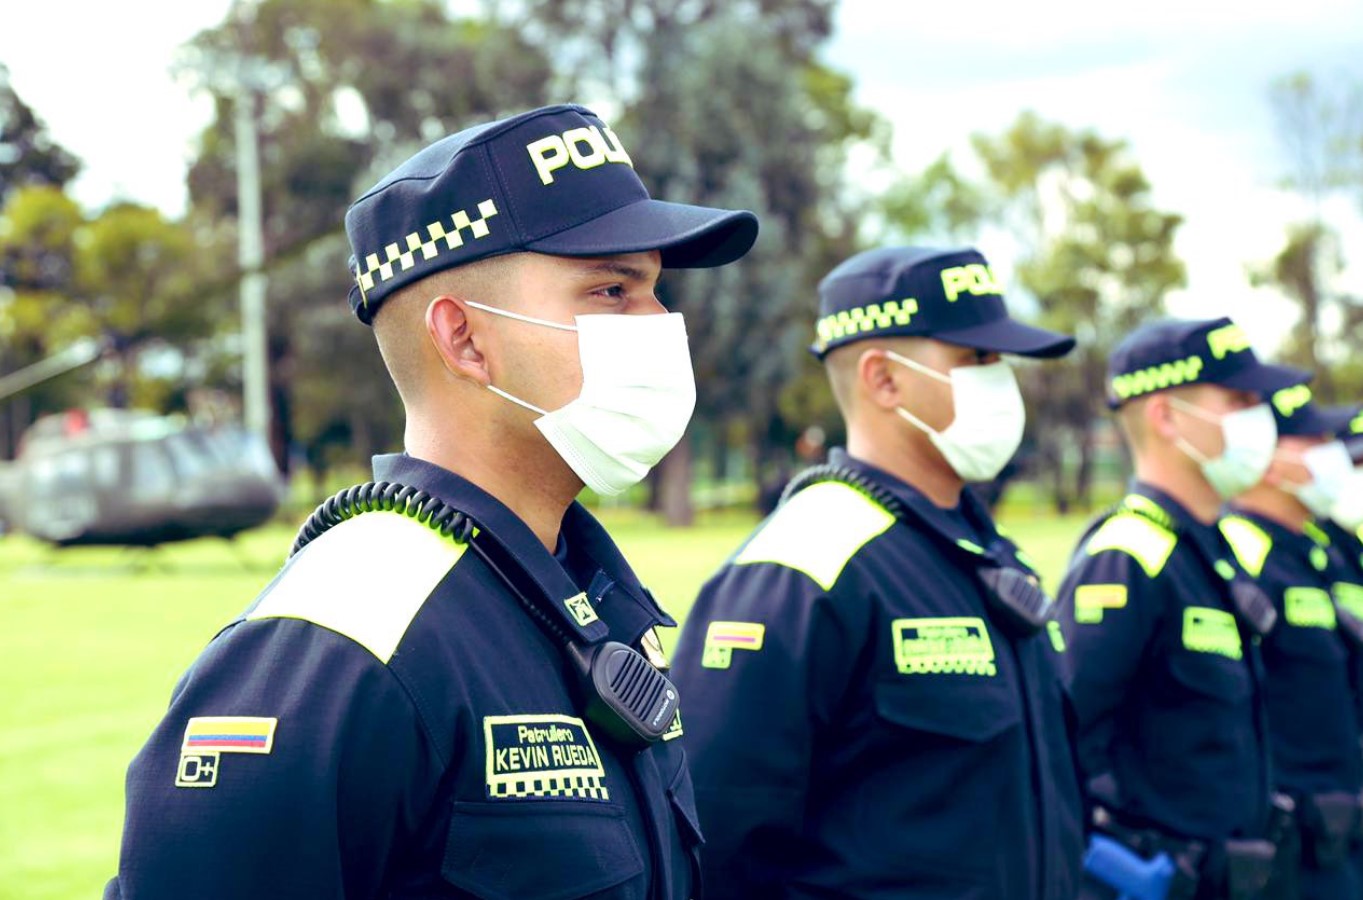 Nuevo uniforme de la Policía Nacional comienza prueba piloto